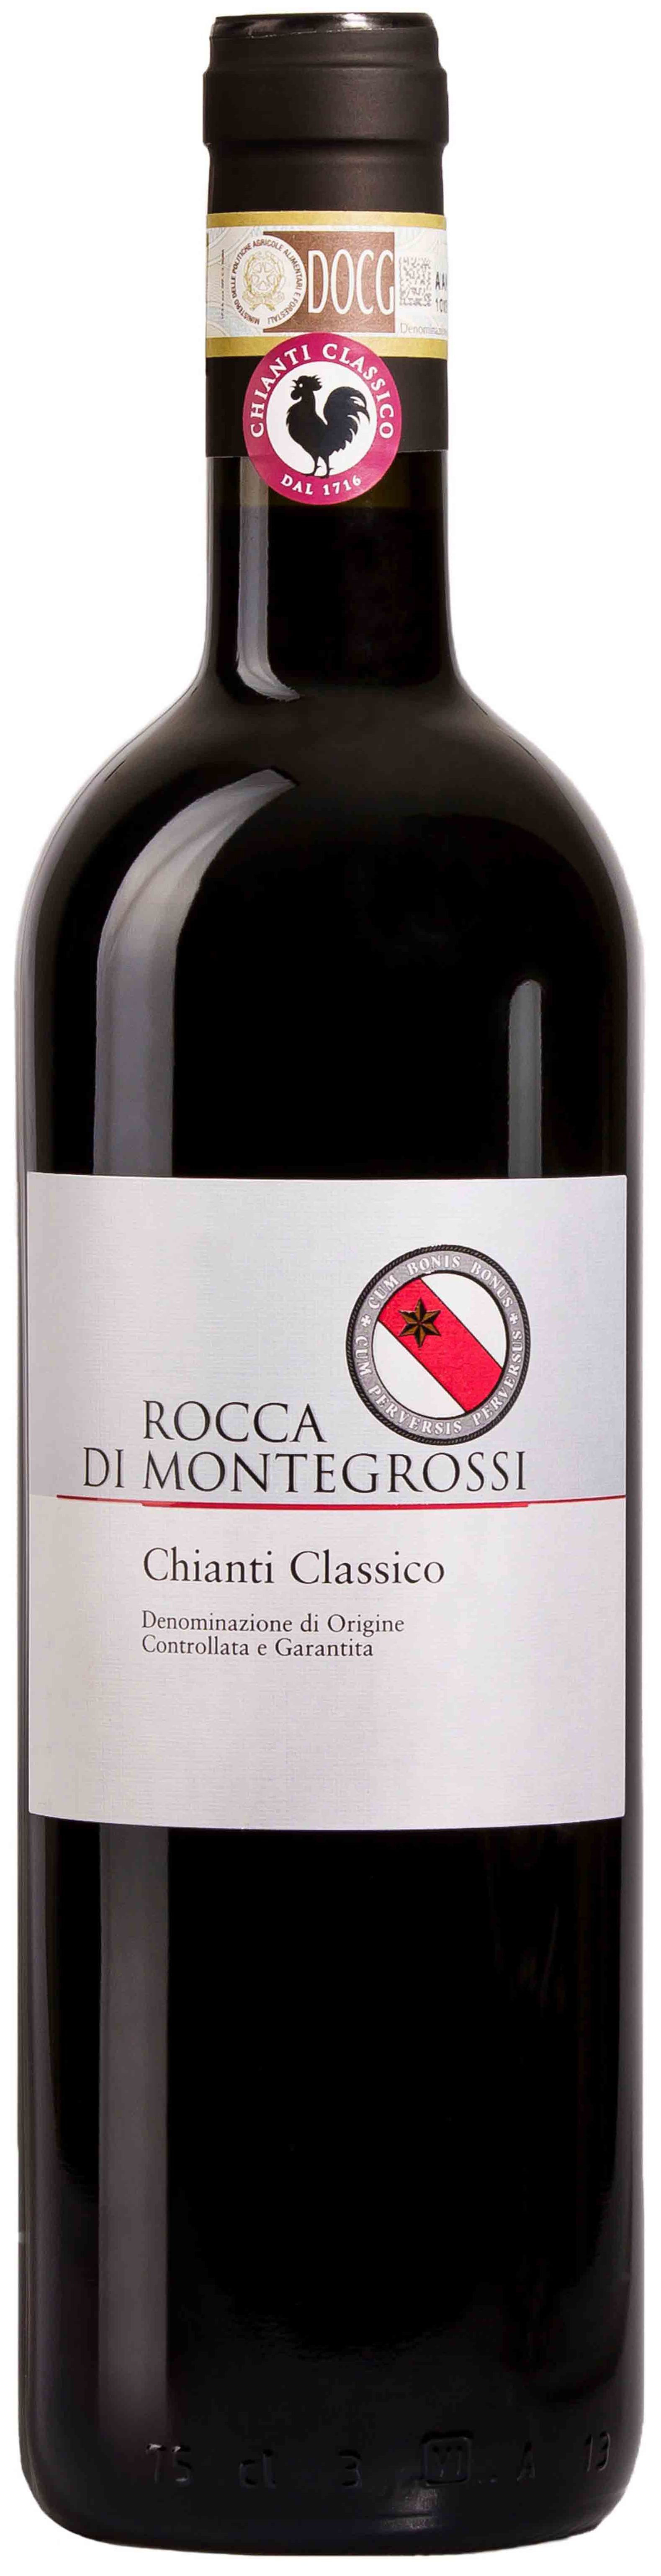 Rocca Di Montegrossi, Chianti Classico, 2014